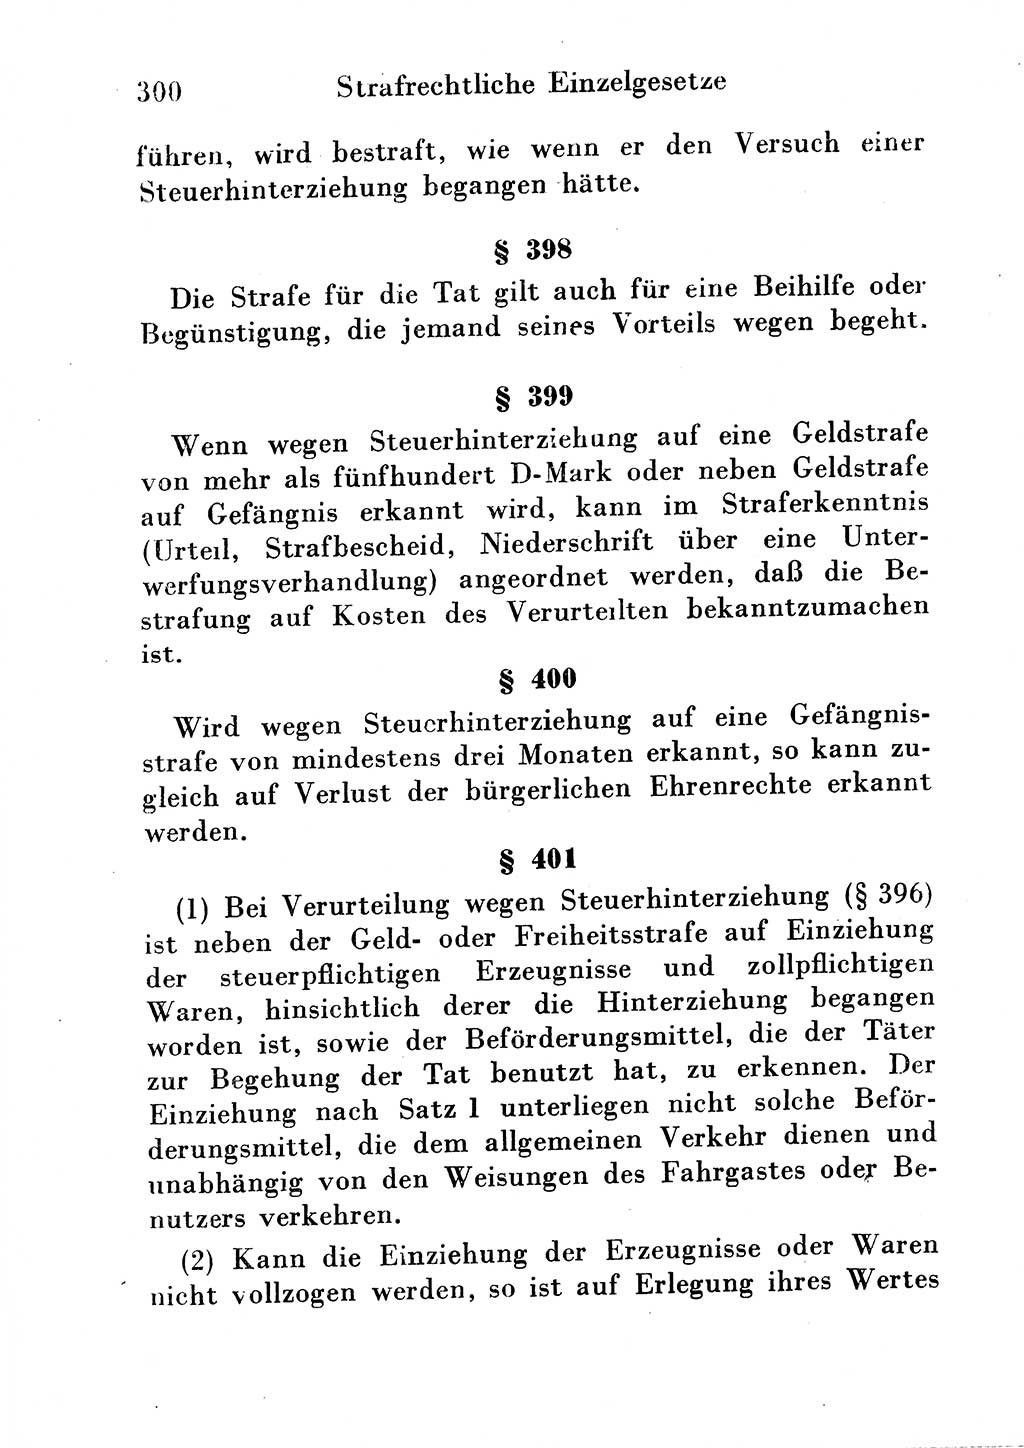 Strafgesetzbuch (StGB) und andere Strafgesetze [Deutsche Demokratische Republik (DDR)] 1954, Seite 300 (StGB Strafges. DDR 1954, S. 300)